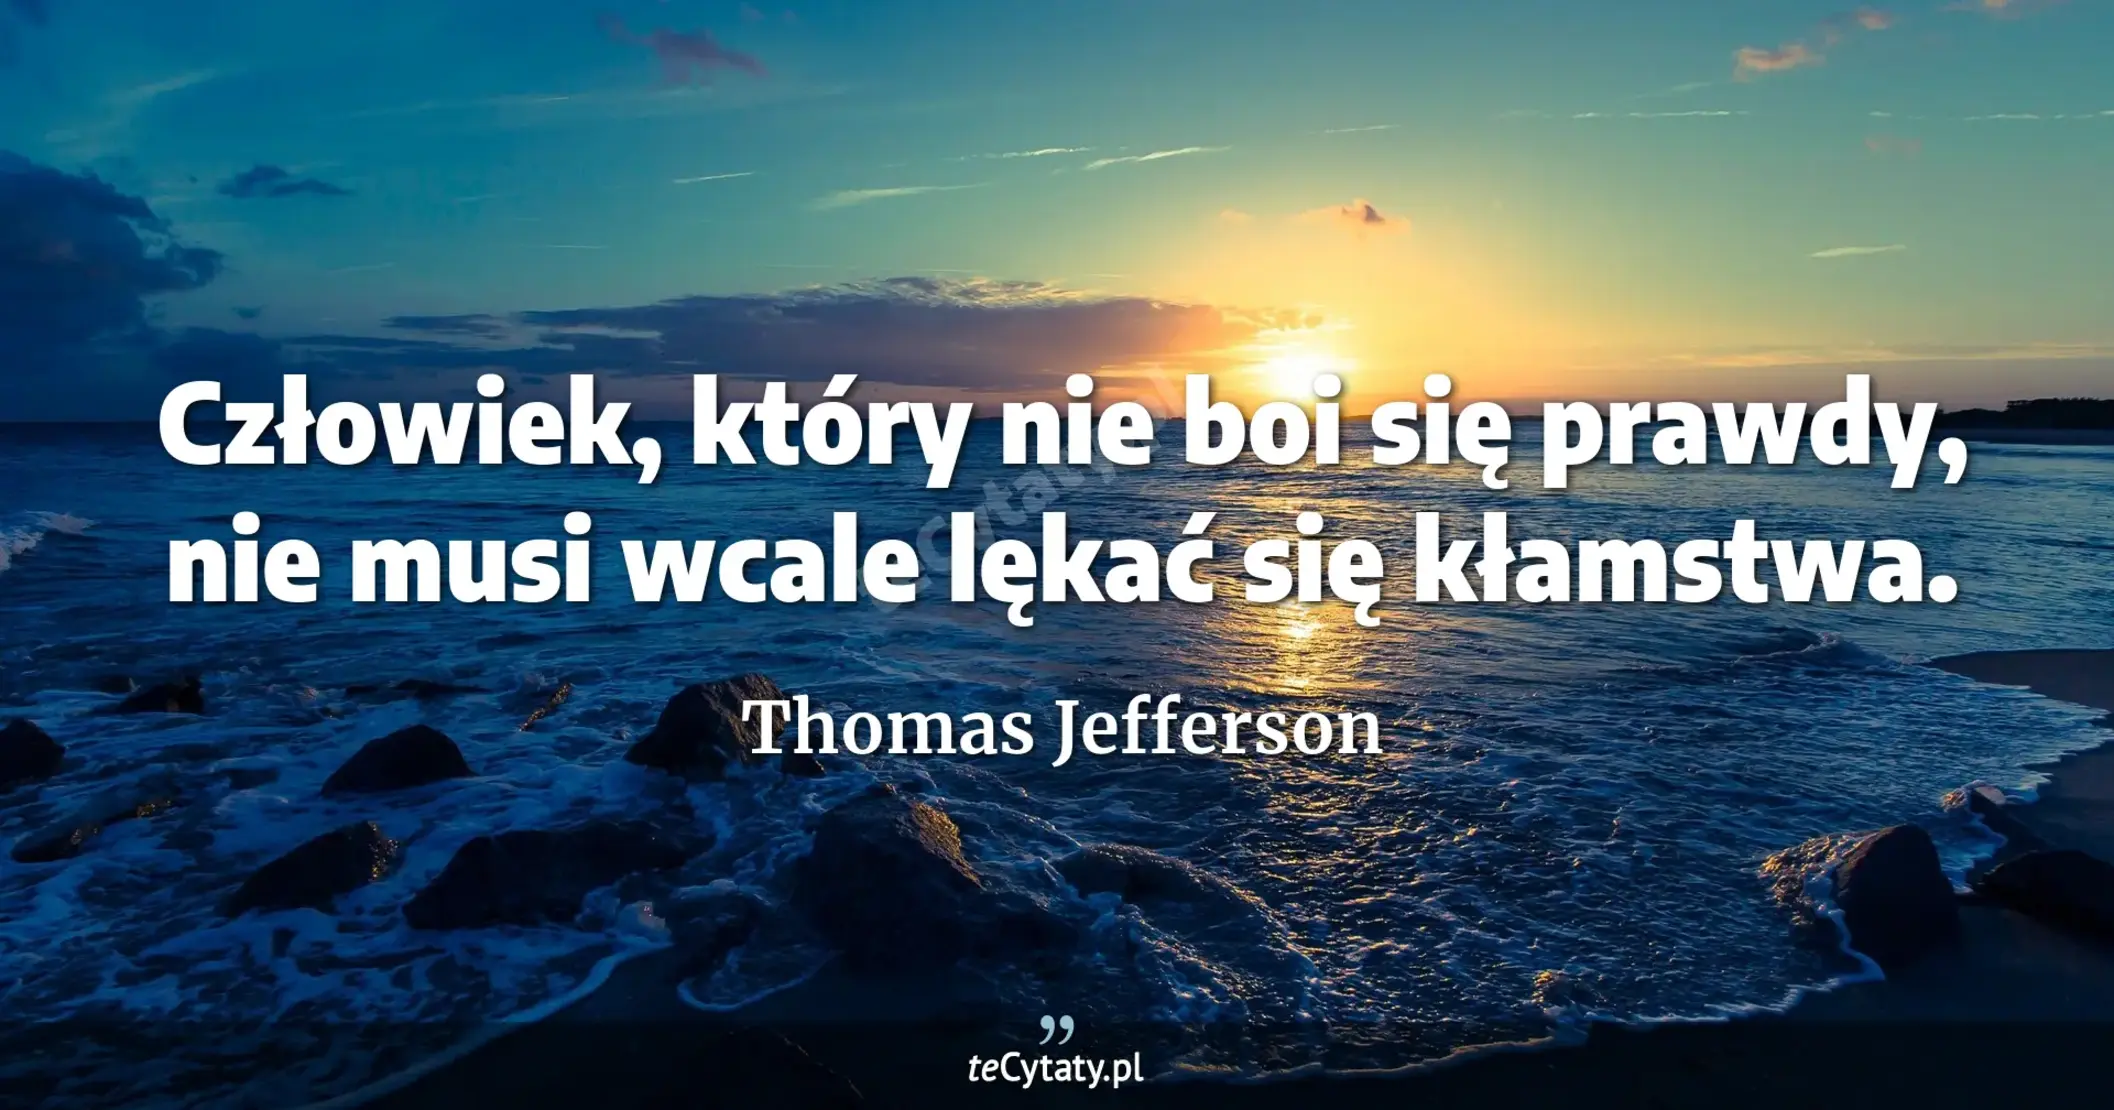 Człowiek, który nie boi się prawdy, nie musi wcale lękać się kłamstwa. - Thomas Jefferson